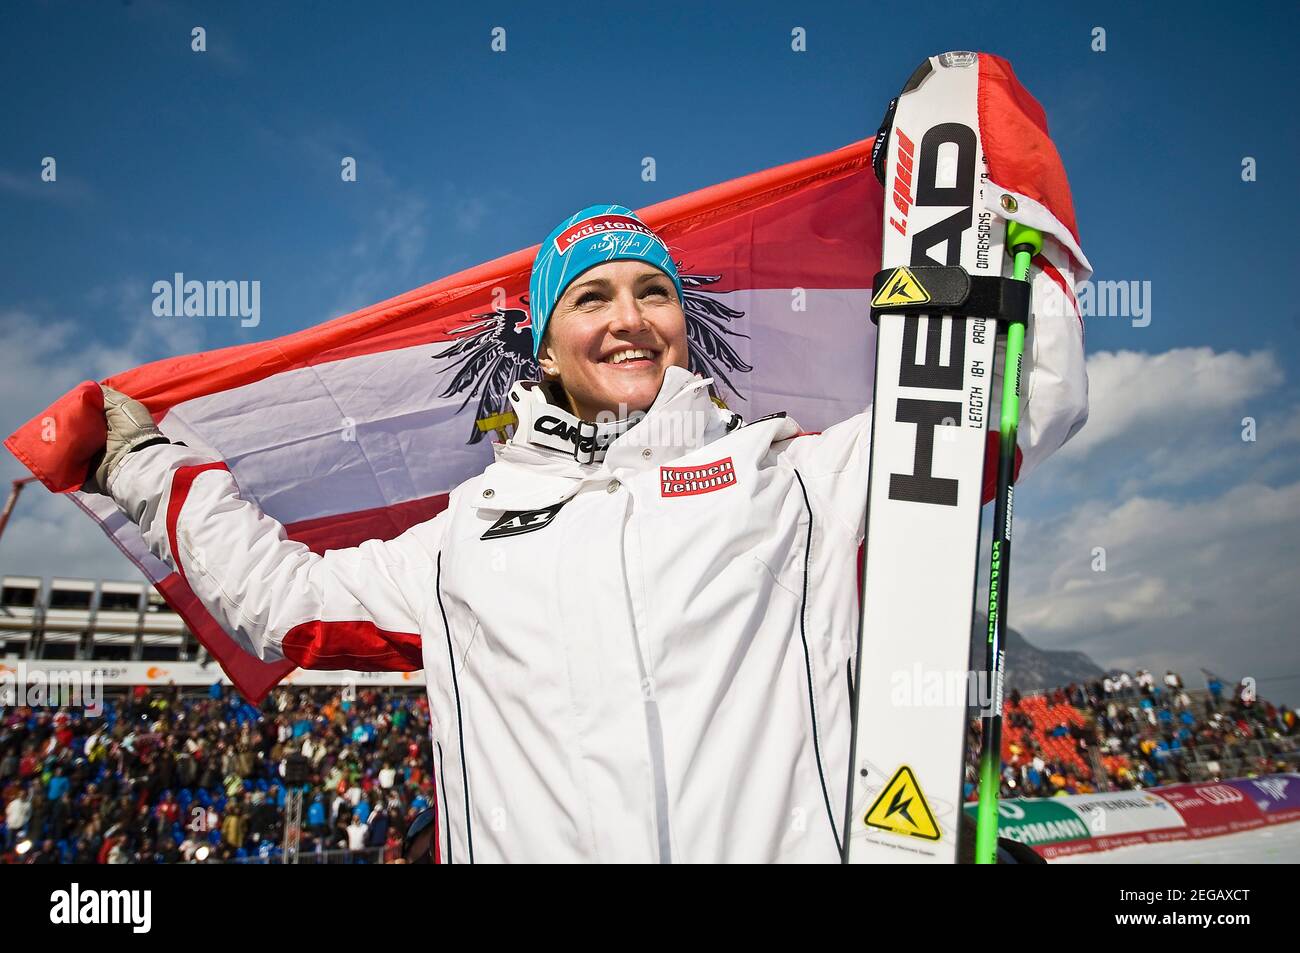 Elisabeth GOERGL avrà 40 anni il 20 febbraio 2021, vincitore del giubilo Elisabeth GOERGL, AUT, 1° posto con bandiera, donne in discesa il 13 febbraio 2011 Campionati mondiali di sci alpino 2011 a Garmisch-Partenkirchen dal 7 febbraio. - 02/20/2011 Â | utilizzo in tutto il mondo Foto Stock